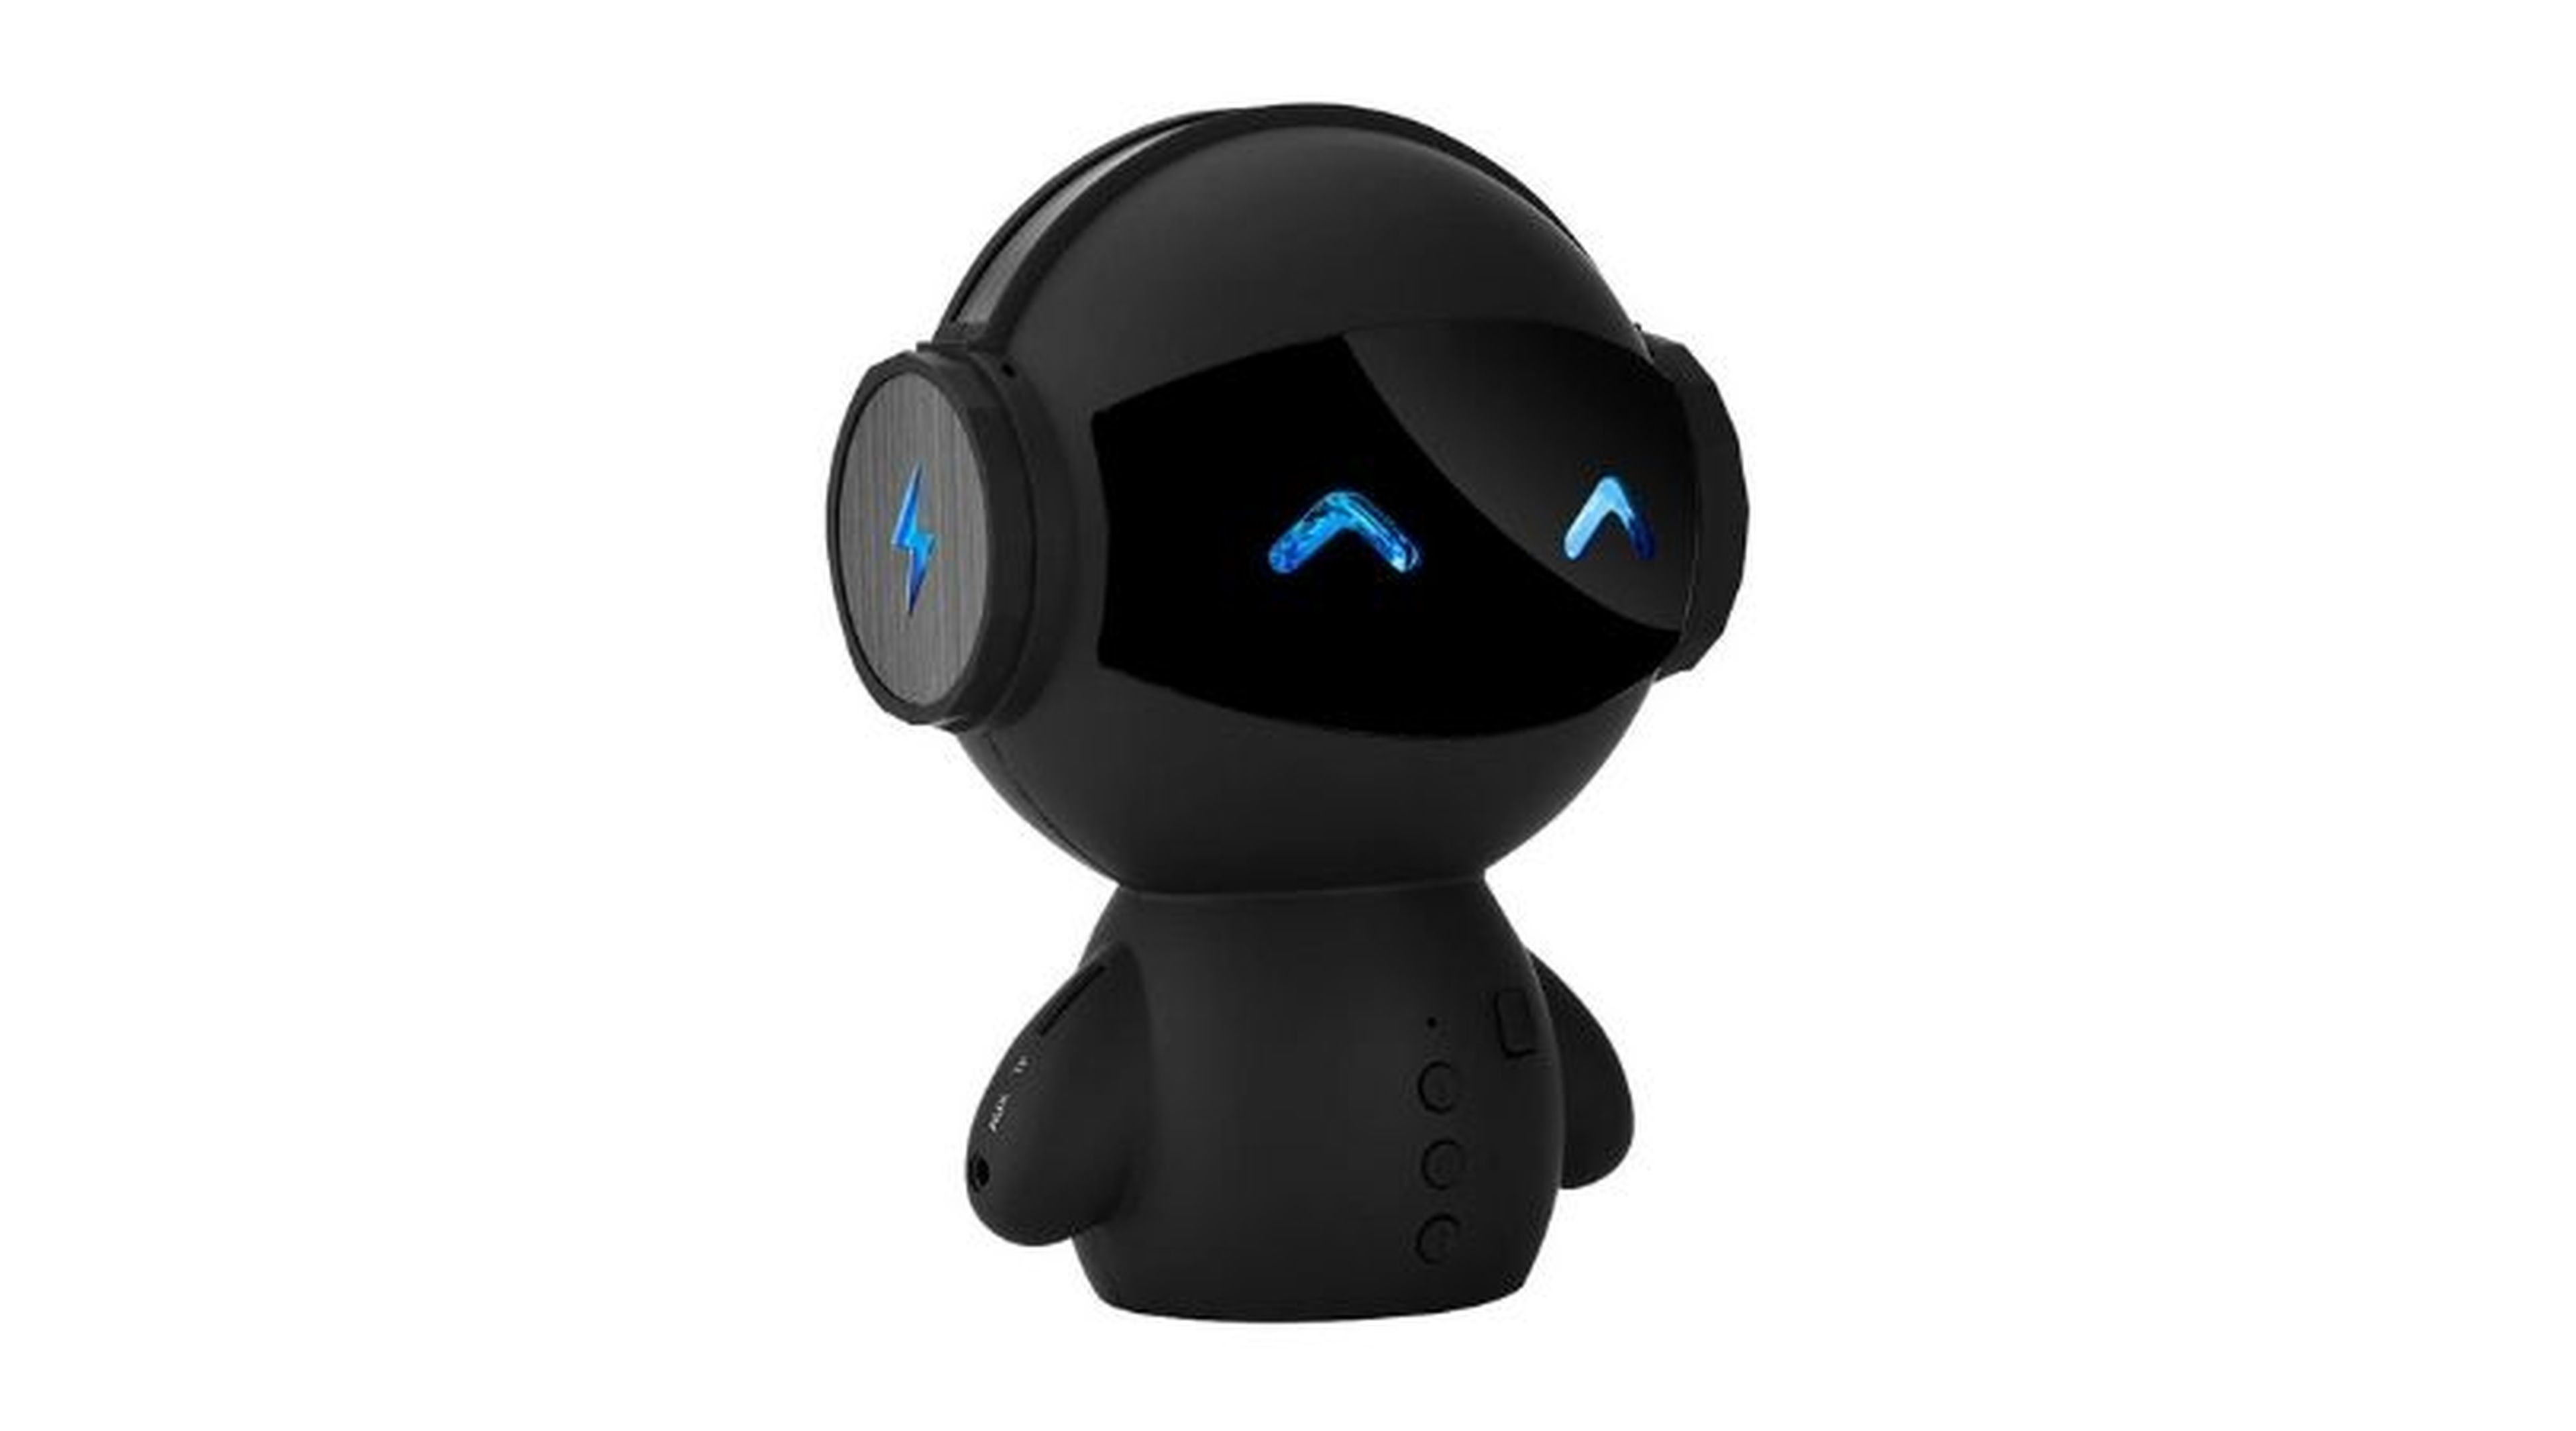 Altavoz Bluetooth con forma de robot